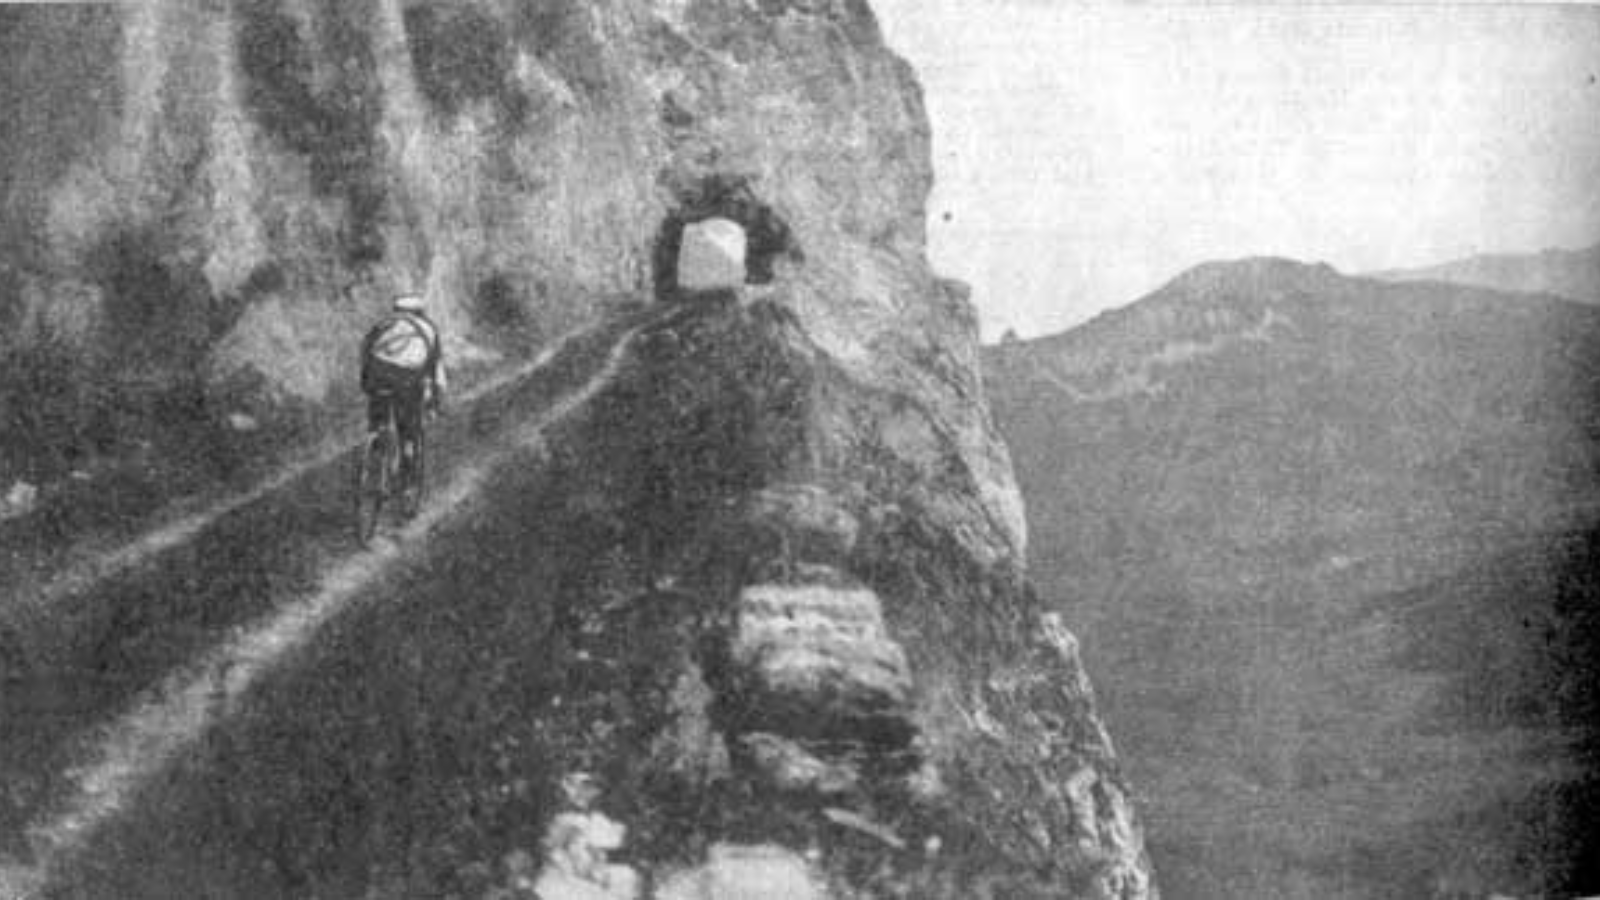 Gustave Garrigou climbing the Aubisque at Tour de France 1911